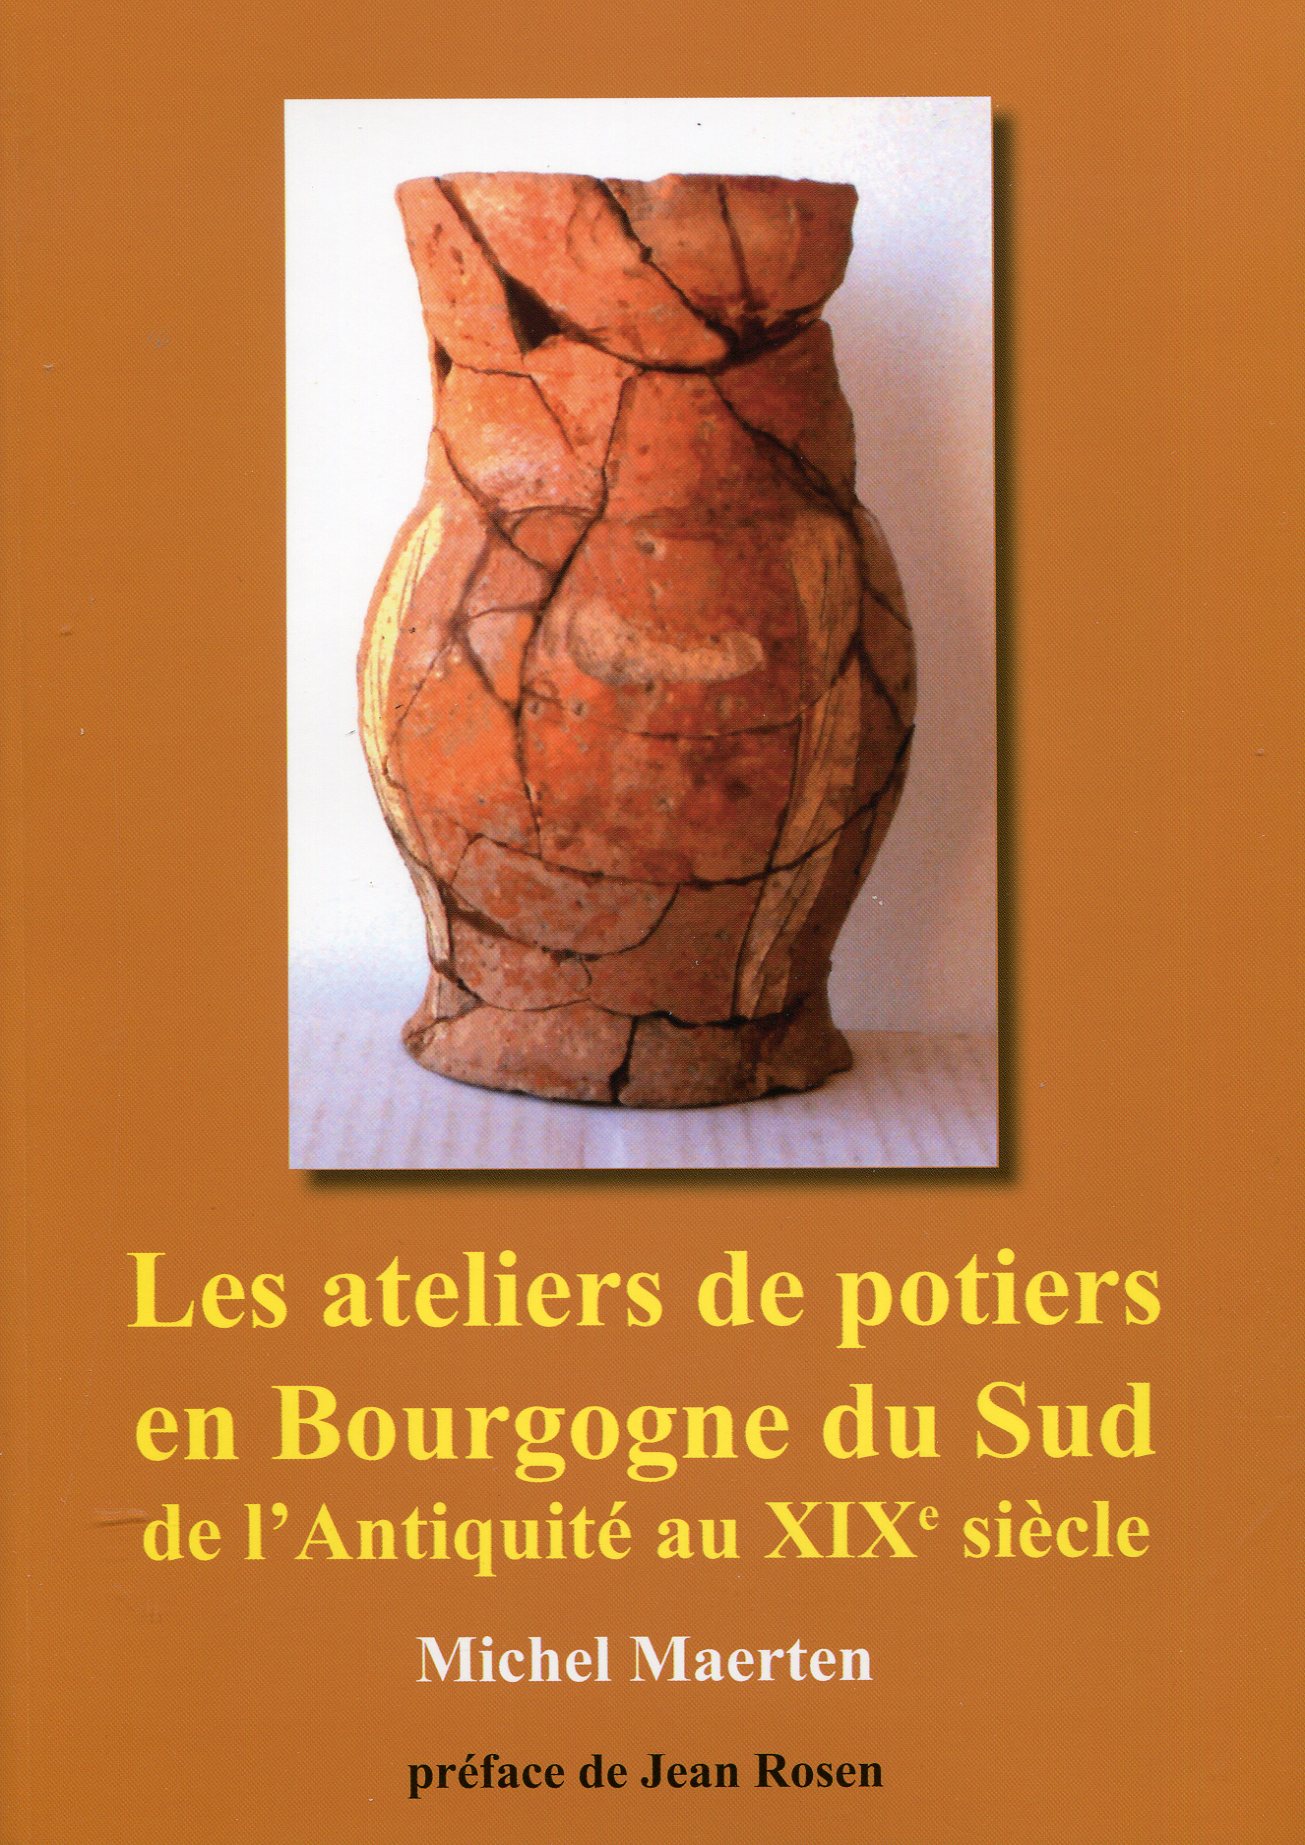 Les ateliers de potiers en Bourgogne du Sud de l'Antiquité au XIXe siècle. Histoire et archéologie, 2011, 395 p.